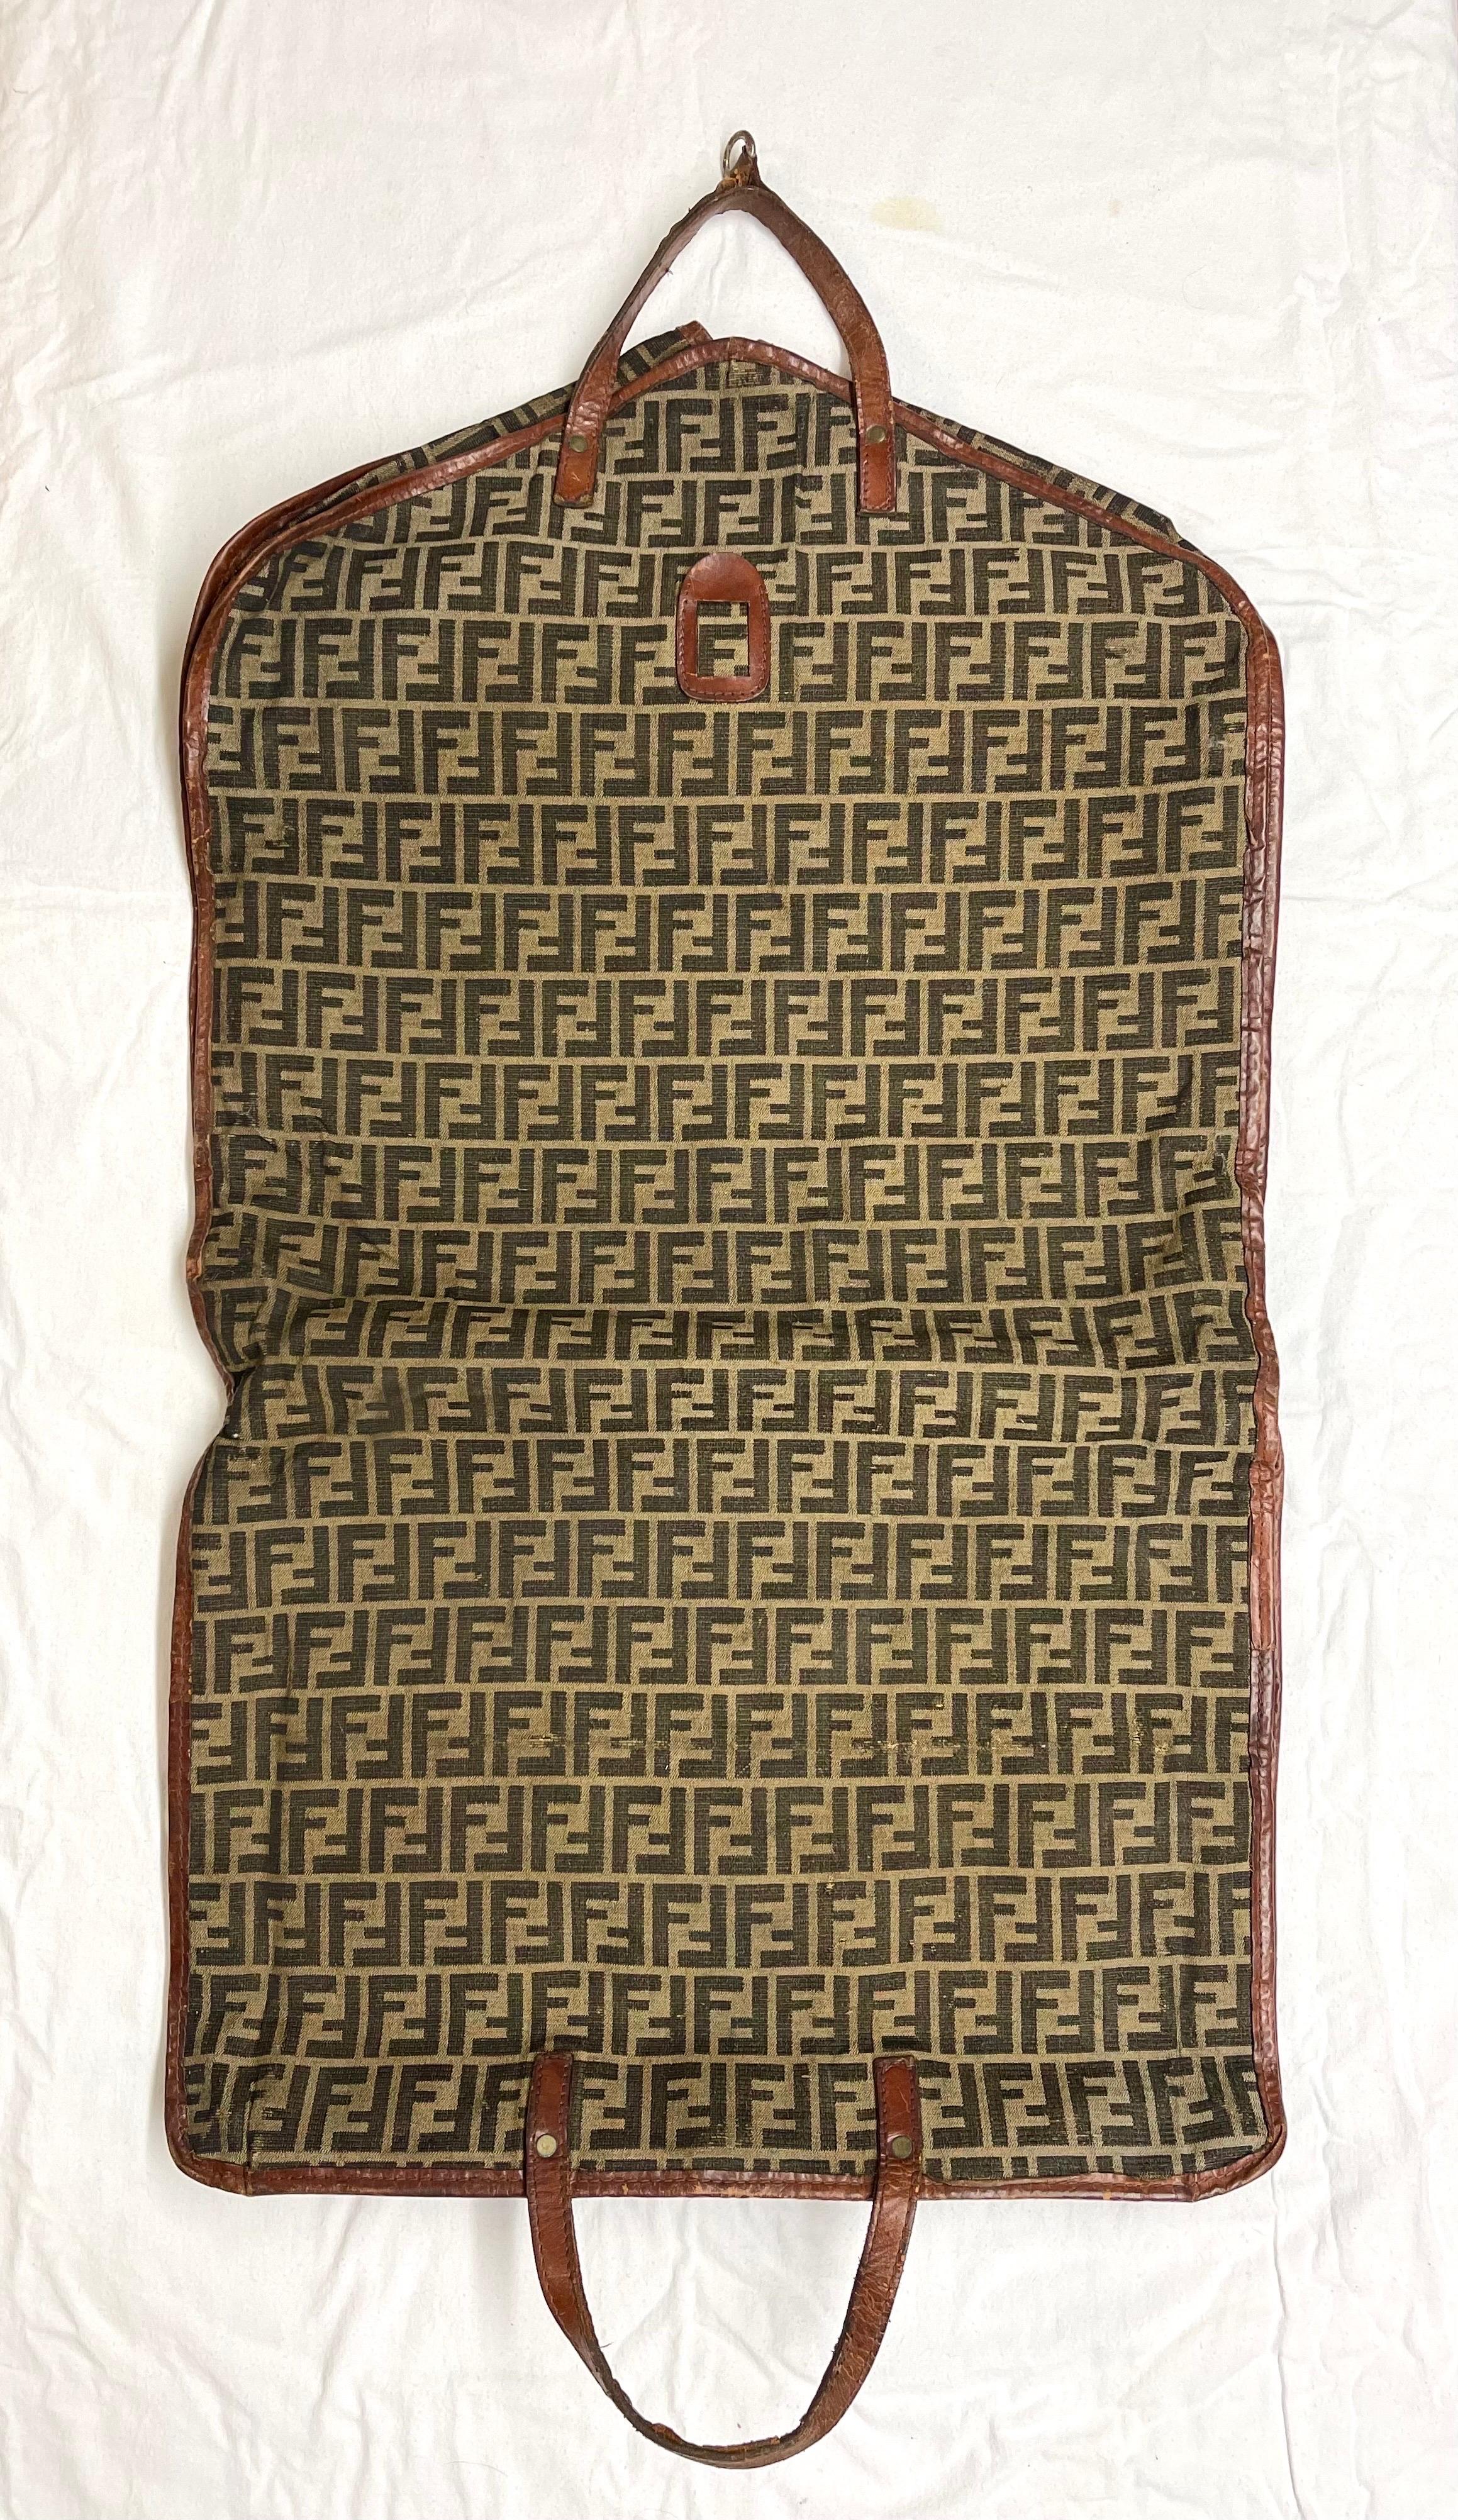 Rare Vintage Fendi Zucca Monogram Garment Travel Carrier. Zucca classique FF  Monogramme sur toile marron et tan avec garniture en cuir. Parfait pour la fashionista voyageuse du monde entier. 
Dimensions approximatives : 44